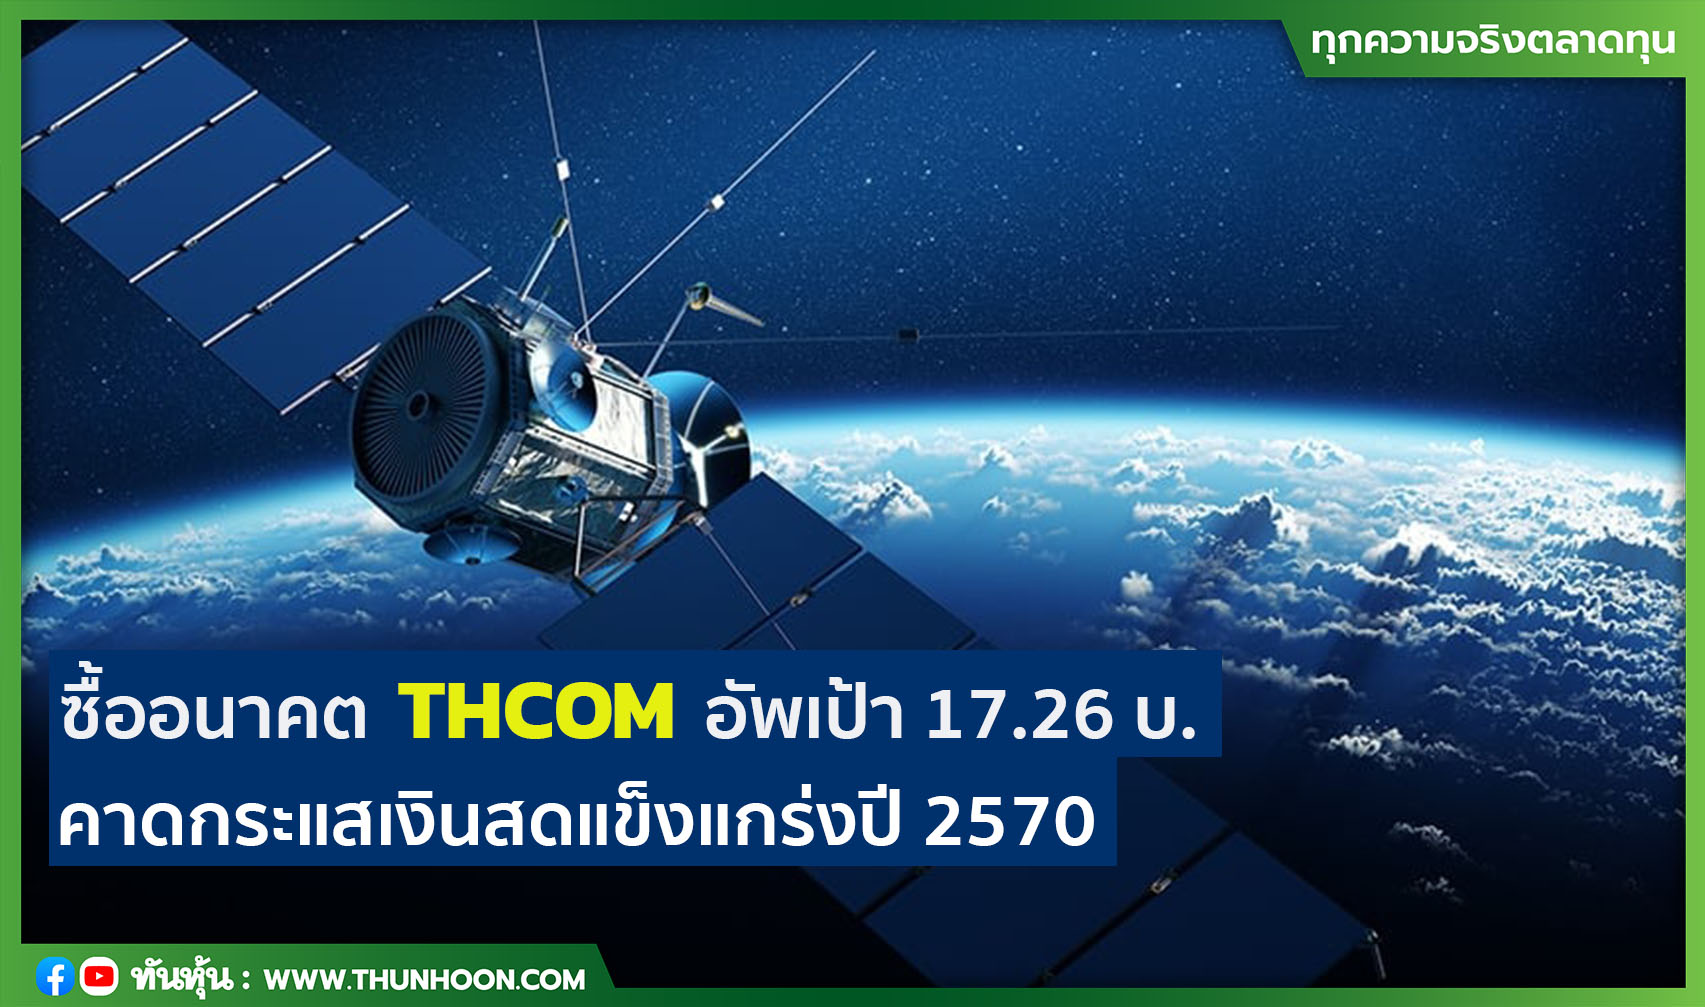 ซื้ออนาคต THCOM อัพเป้า 17.26 บ.  คาดกระแสเงินสดแข็งแกร่งปี 2570